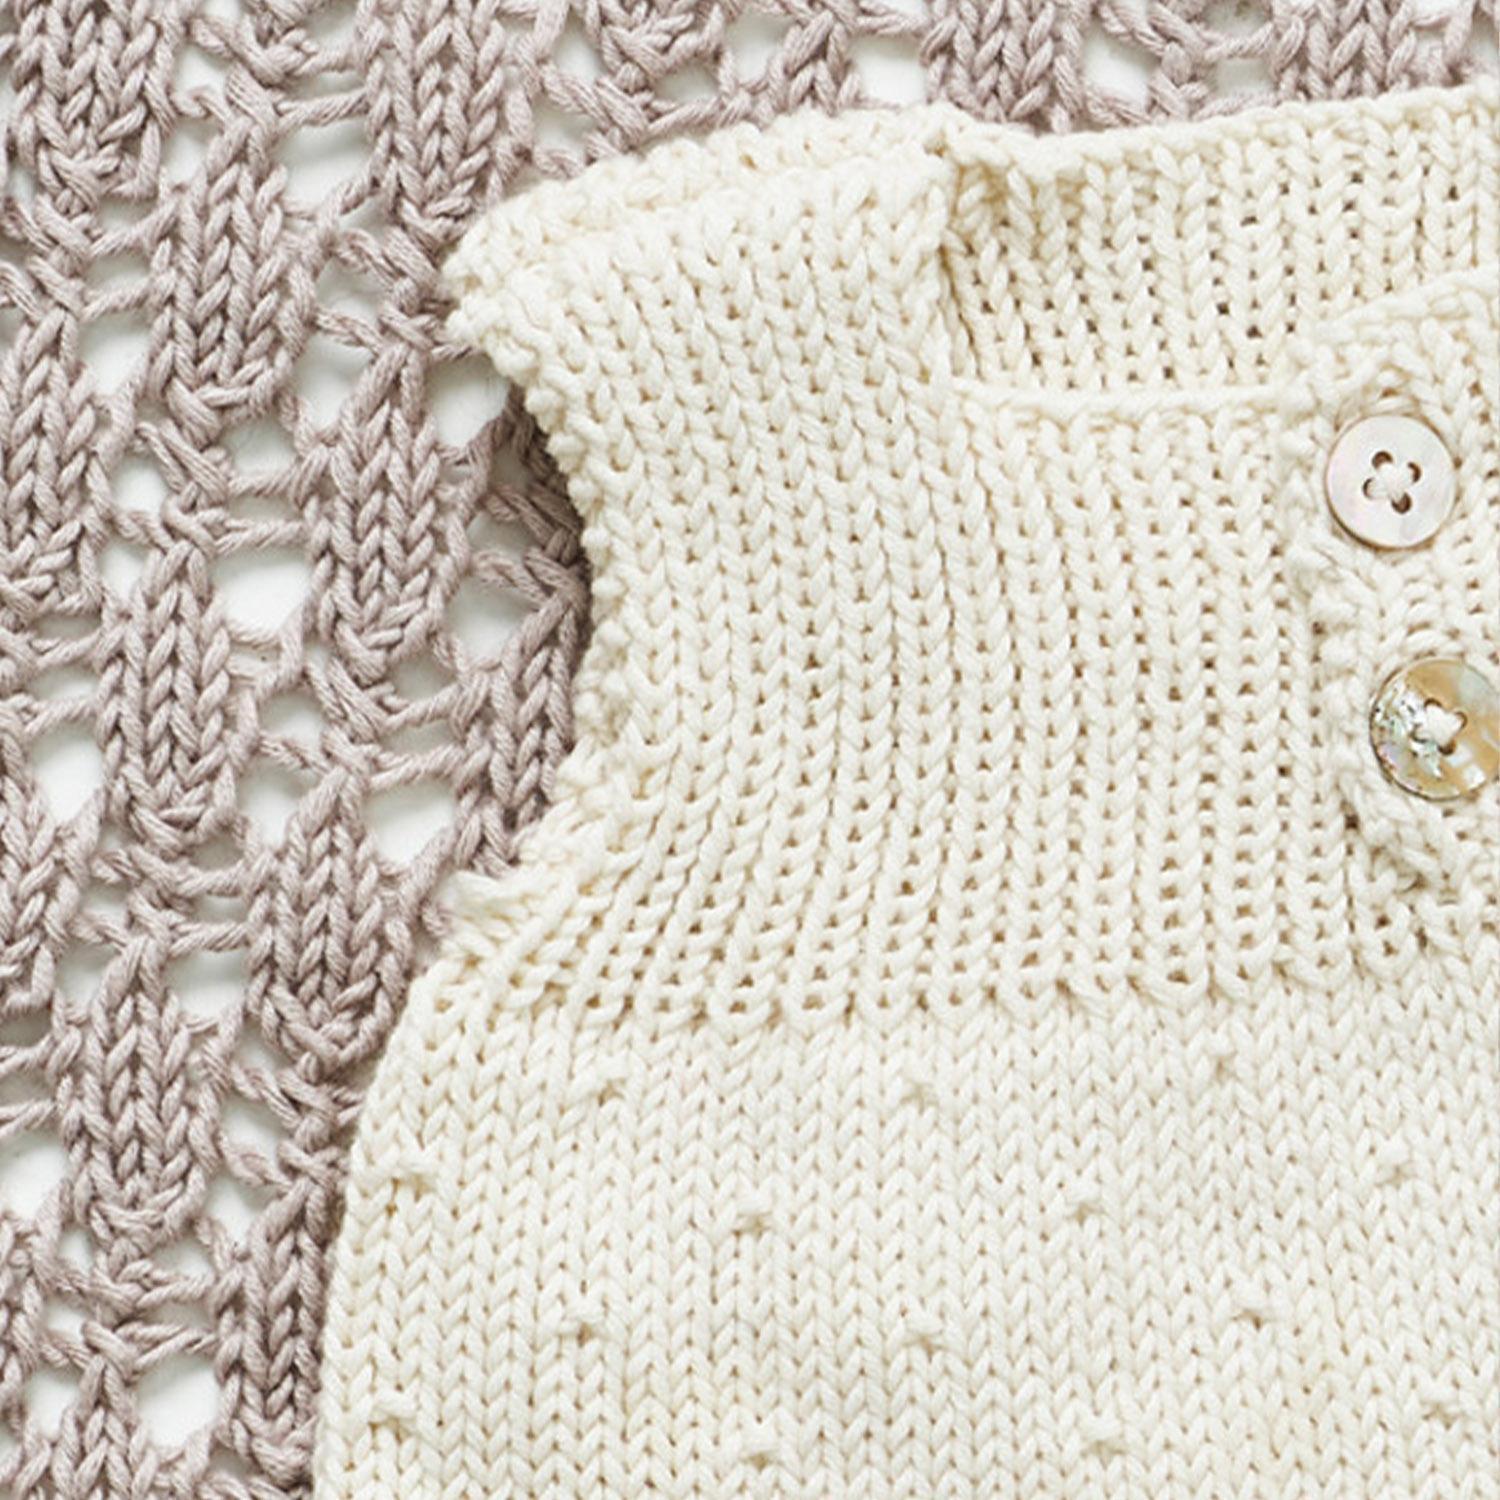 Strikkeopskrift ONION - Carlas babyundertøj - strikkes i bomuld